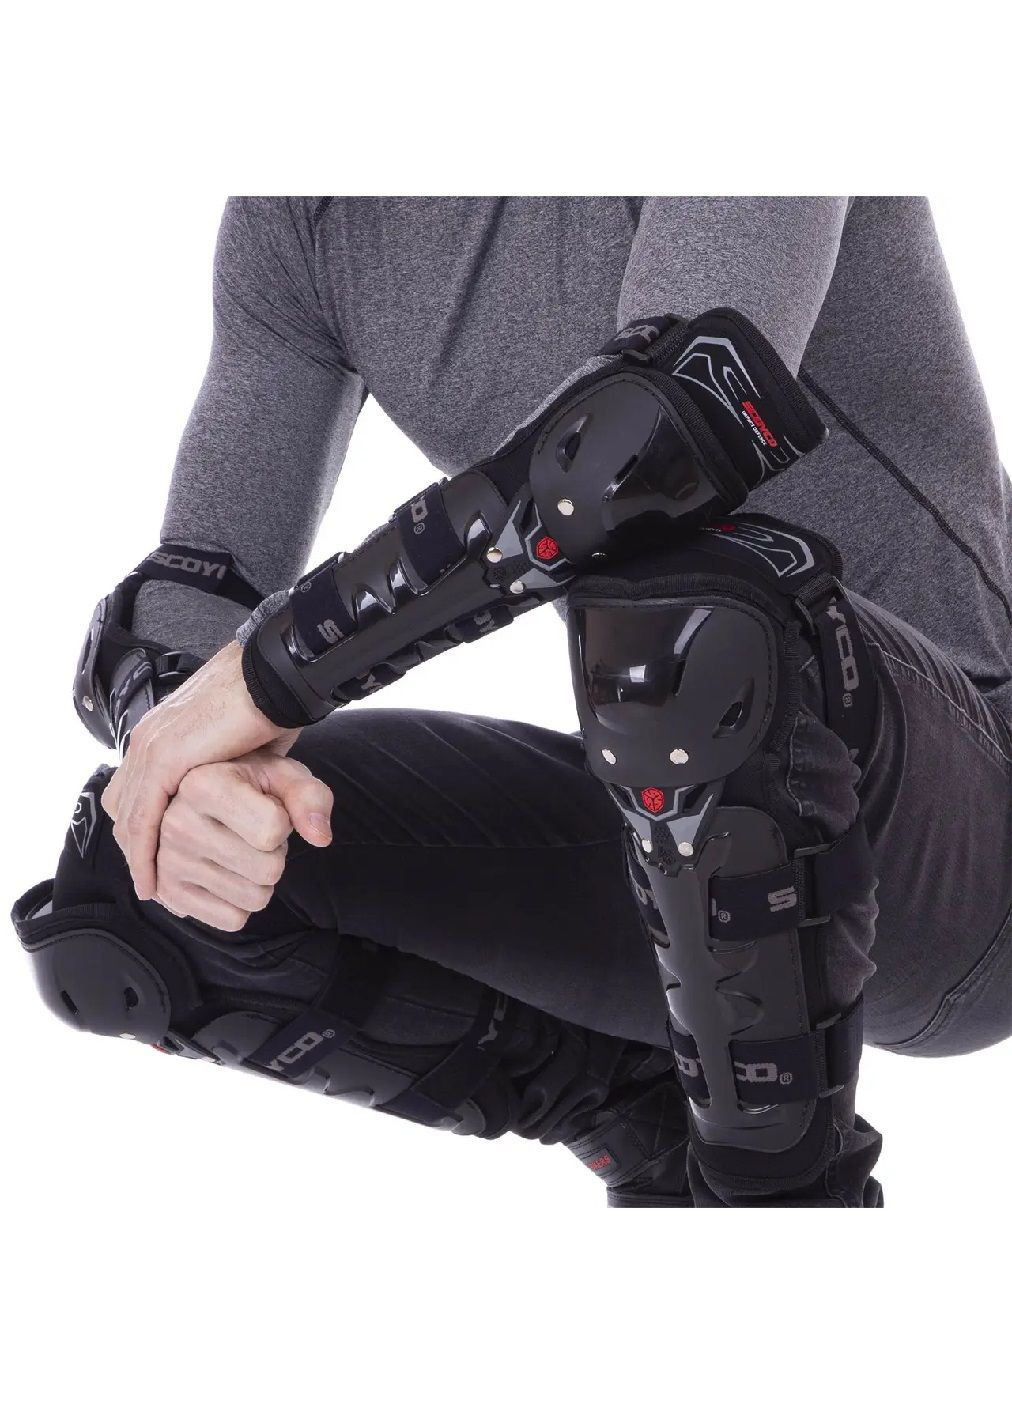 Комплект набор мотонаколенники налокотники защитные с застежками липучками для защиты от травм мото защита (476506-Prob) Черные Unbranded (283250523)